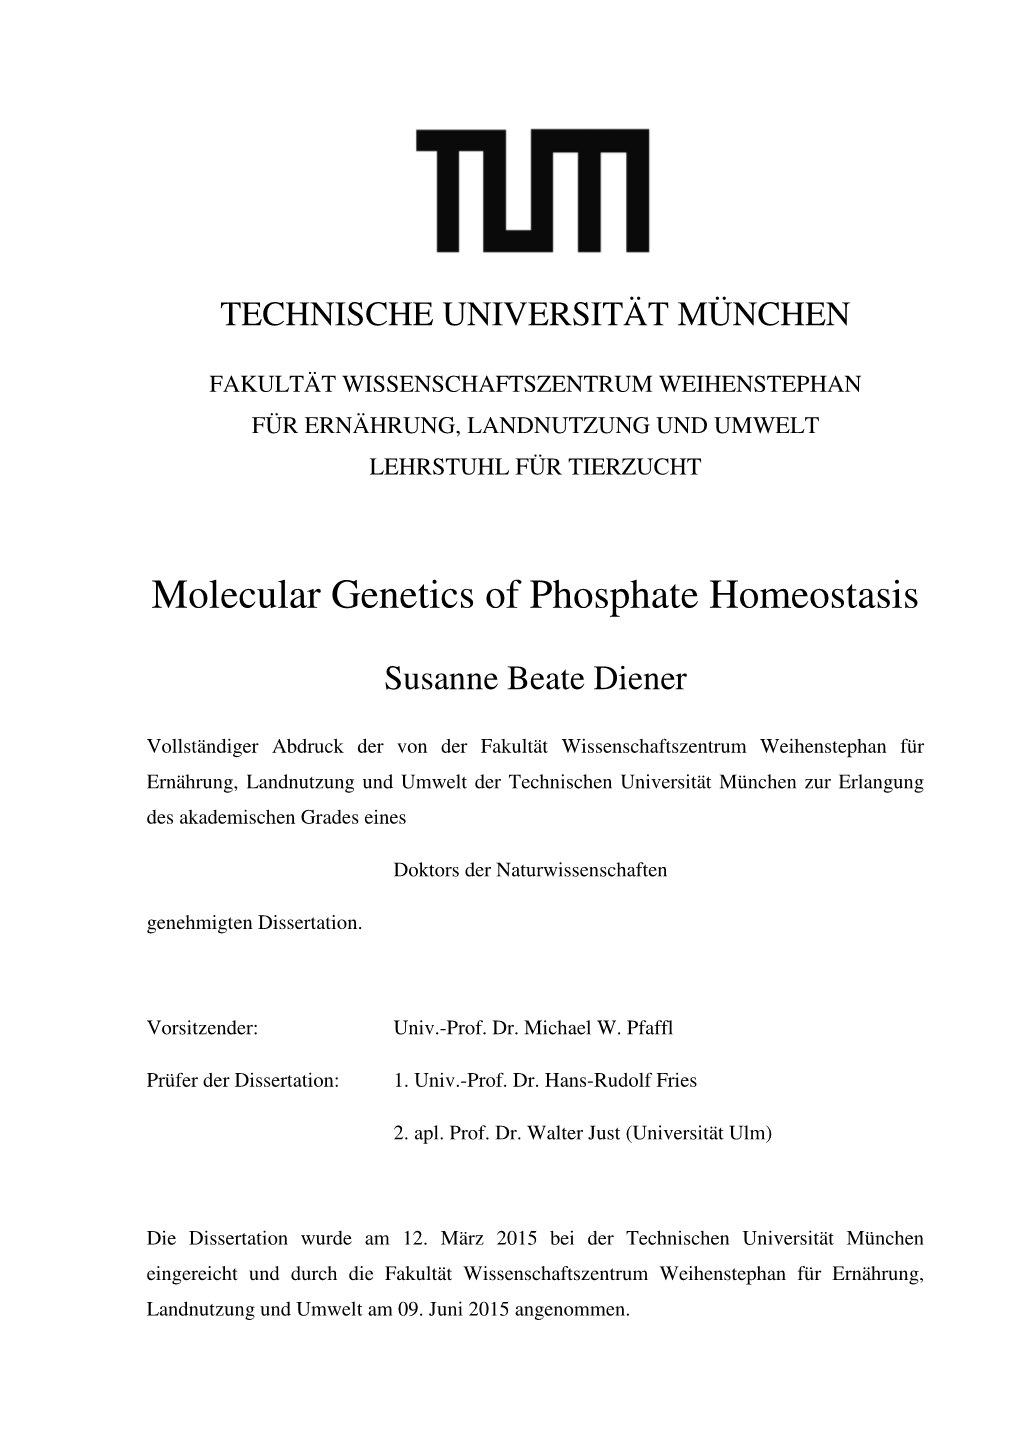 Molecular Genetics of Phosphate Homeostasis